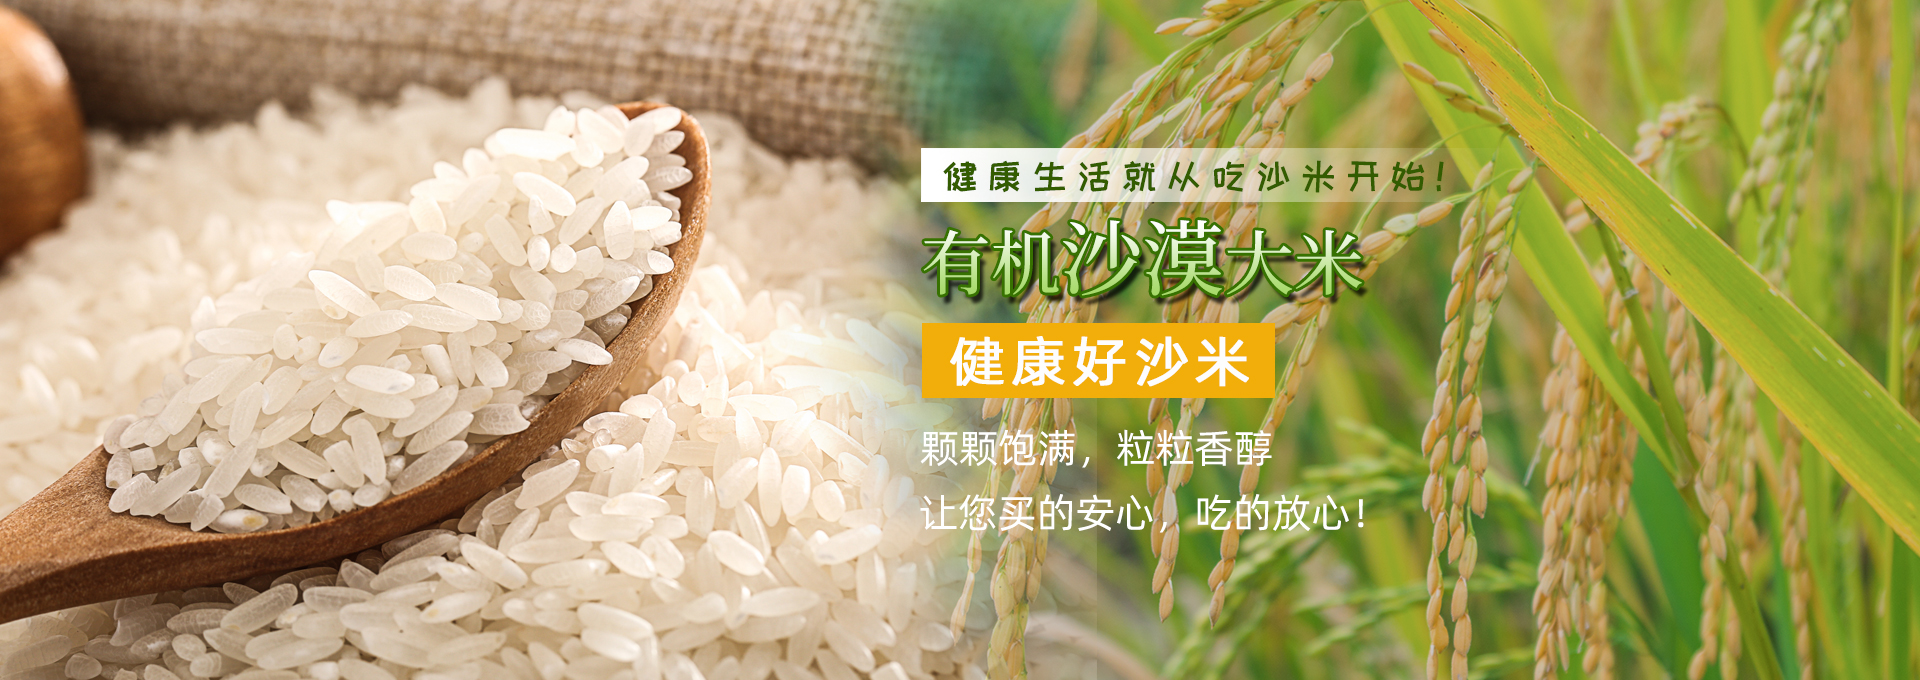 北京绿色有机食品哪里买_其它农业食品相关-北京晶源商贸有限责任公司